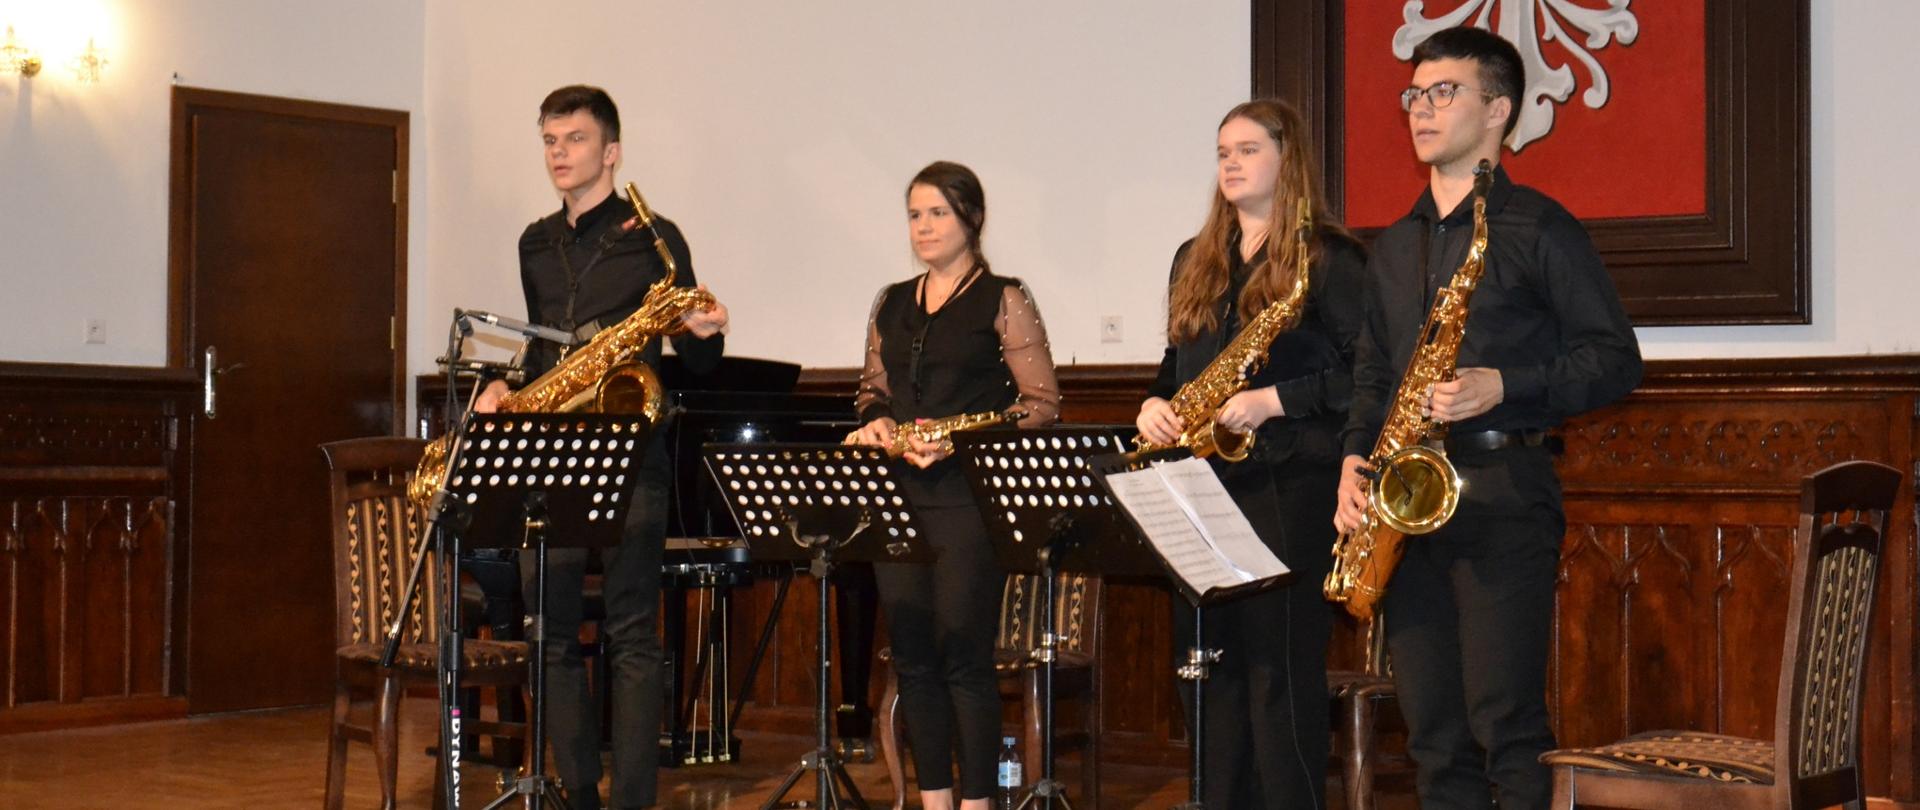 uczniowie klasy saksofonu podczas swojego koncertu klasowego na scenie w Sali Królewskiej PSM w Mielcui